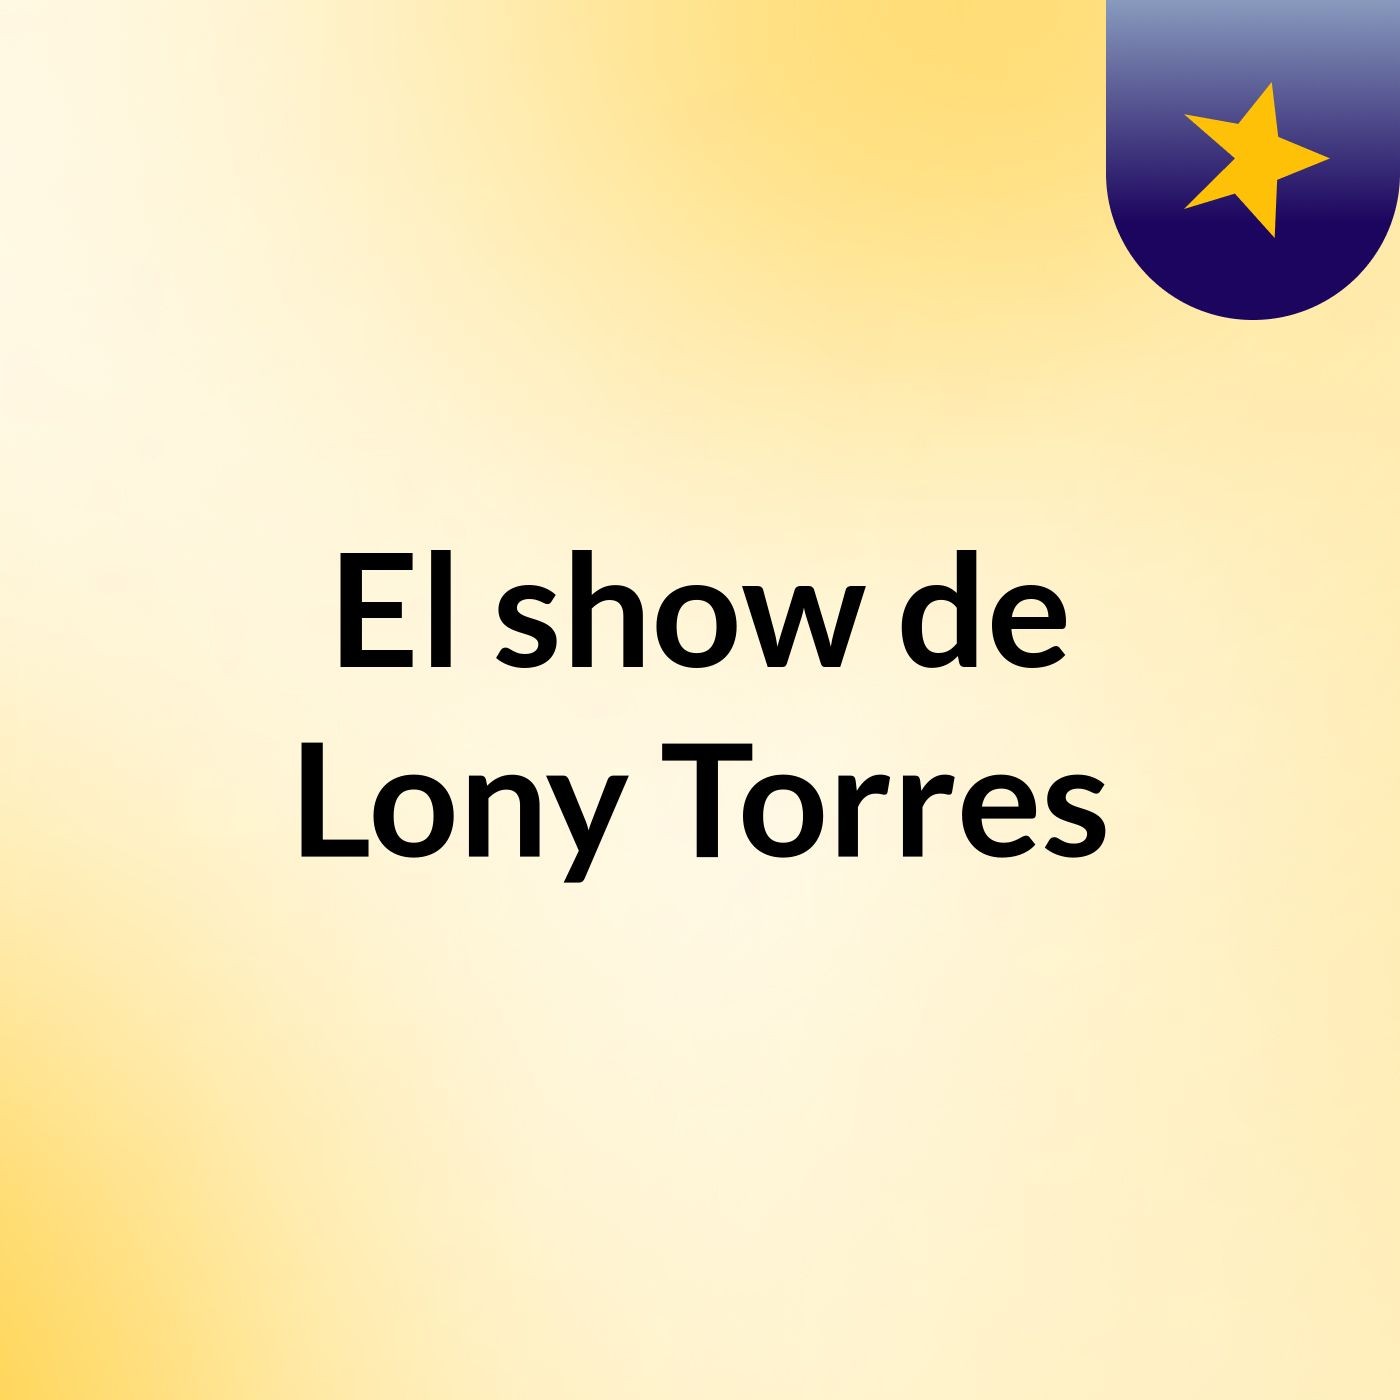 El show de Lony Torres